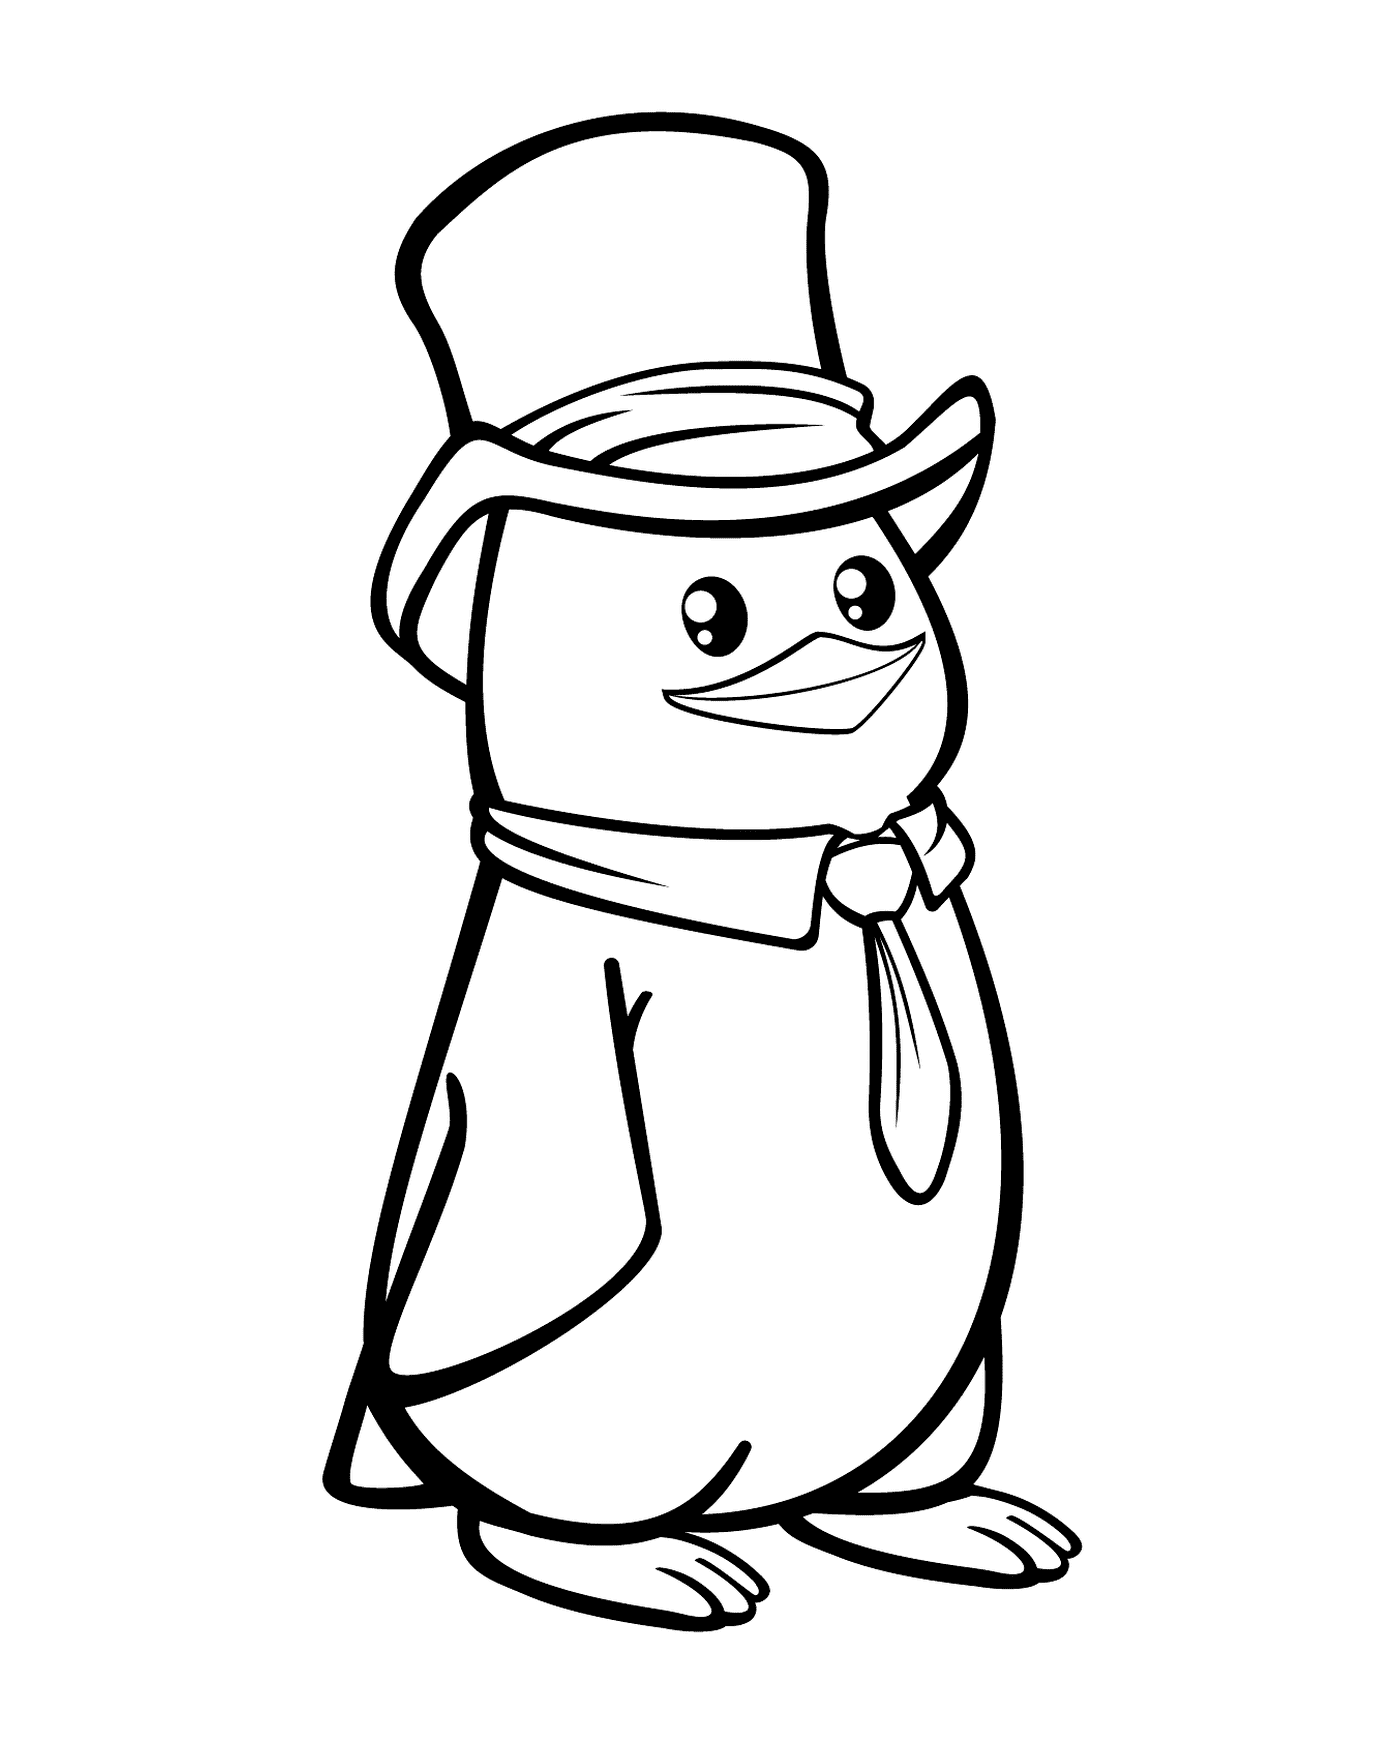  Пингвин с шляпой и галстуком 